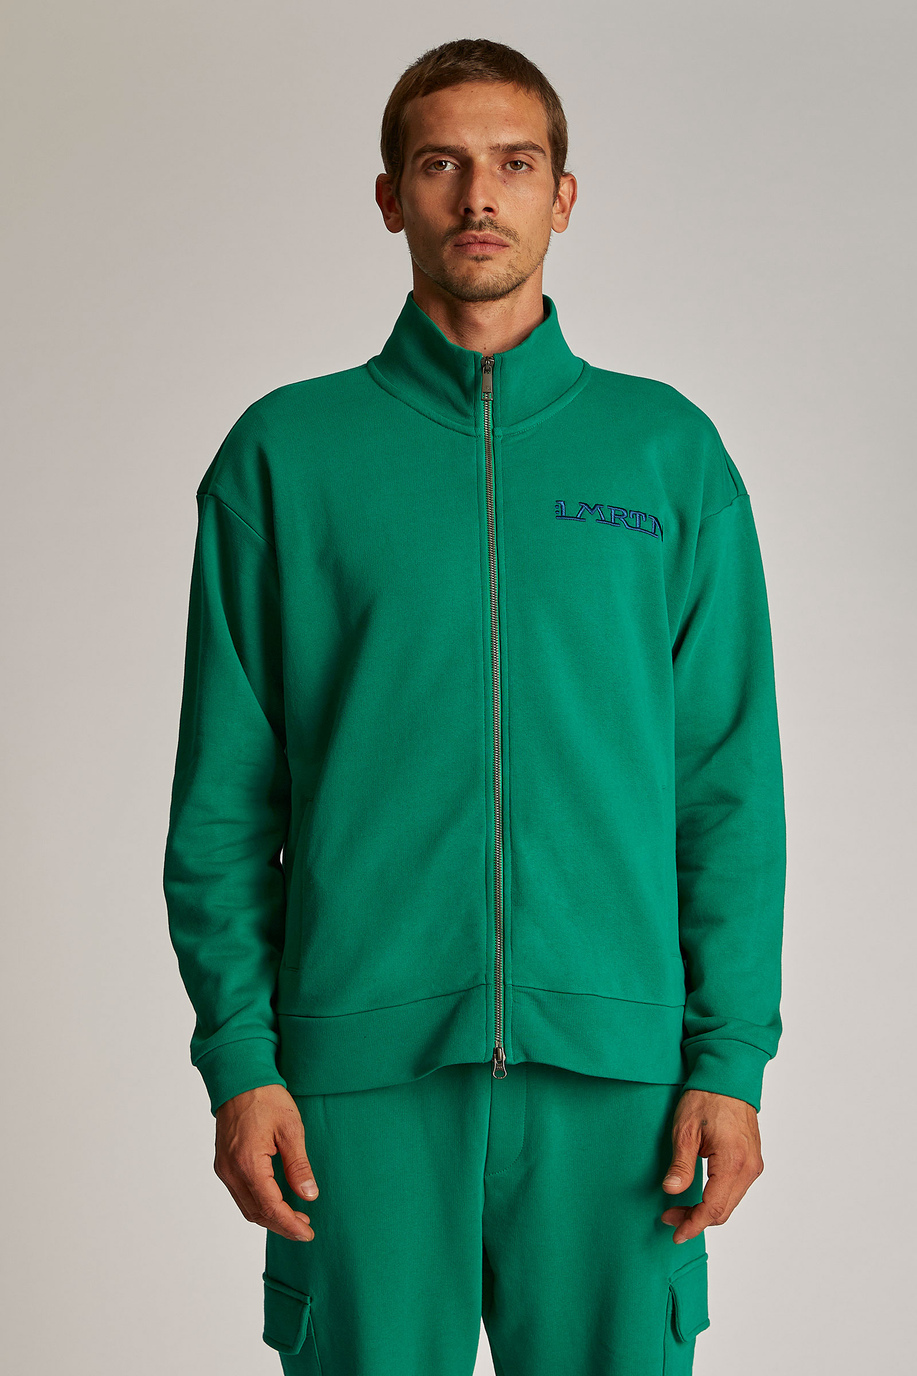 Men's oversized zip-up sweatshirt in 100% cotton fabric - LMRTN | La Martina - Official Online Shop